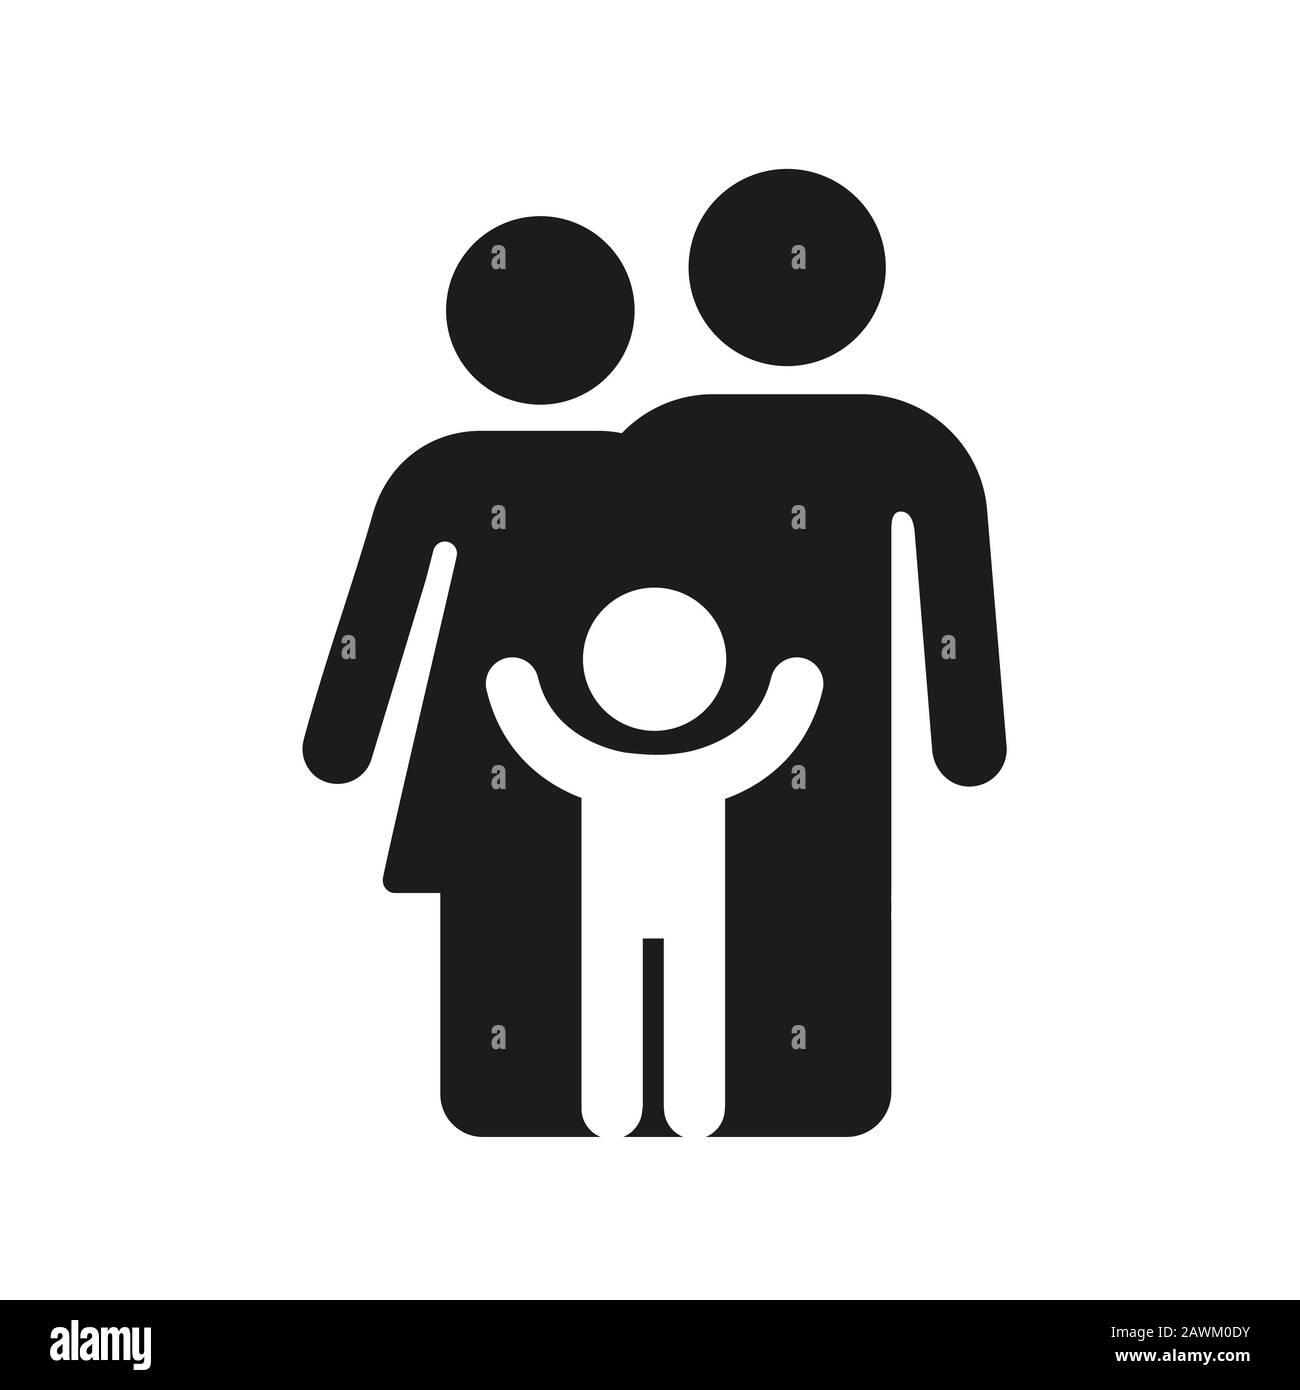 Familiensymbol mit einfacher Abbildung, Eltern und Kind. Silhouette von Vater, Mutter und Kind. Minimales geometrisches Schwarz-Weiß-Symbol oder -Logo. Isolierter Vektor schlecht Stock Vektor